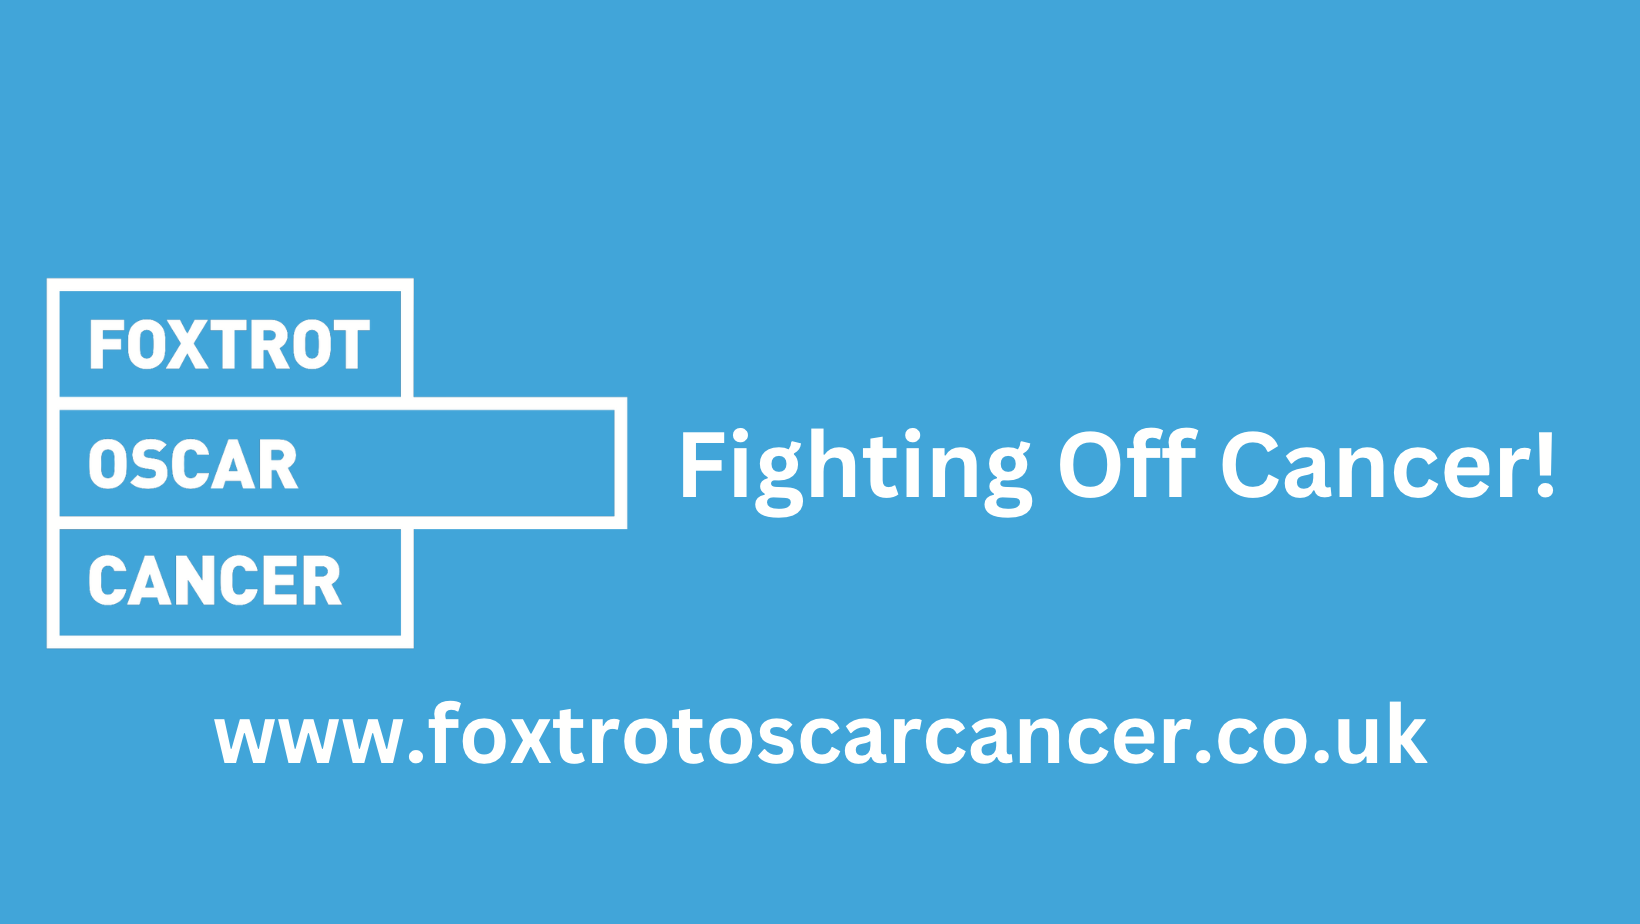 Foxtrot Oscar Cancer